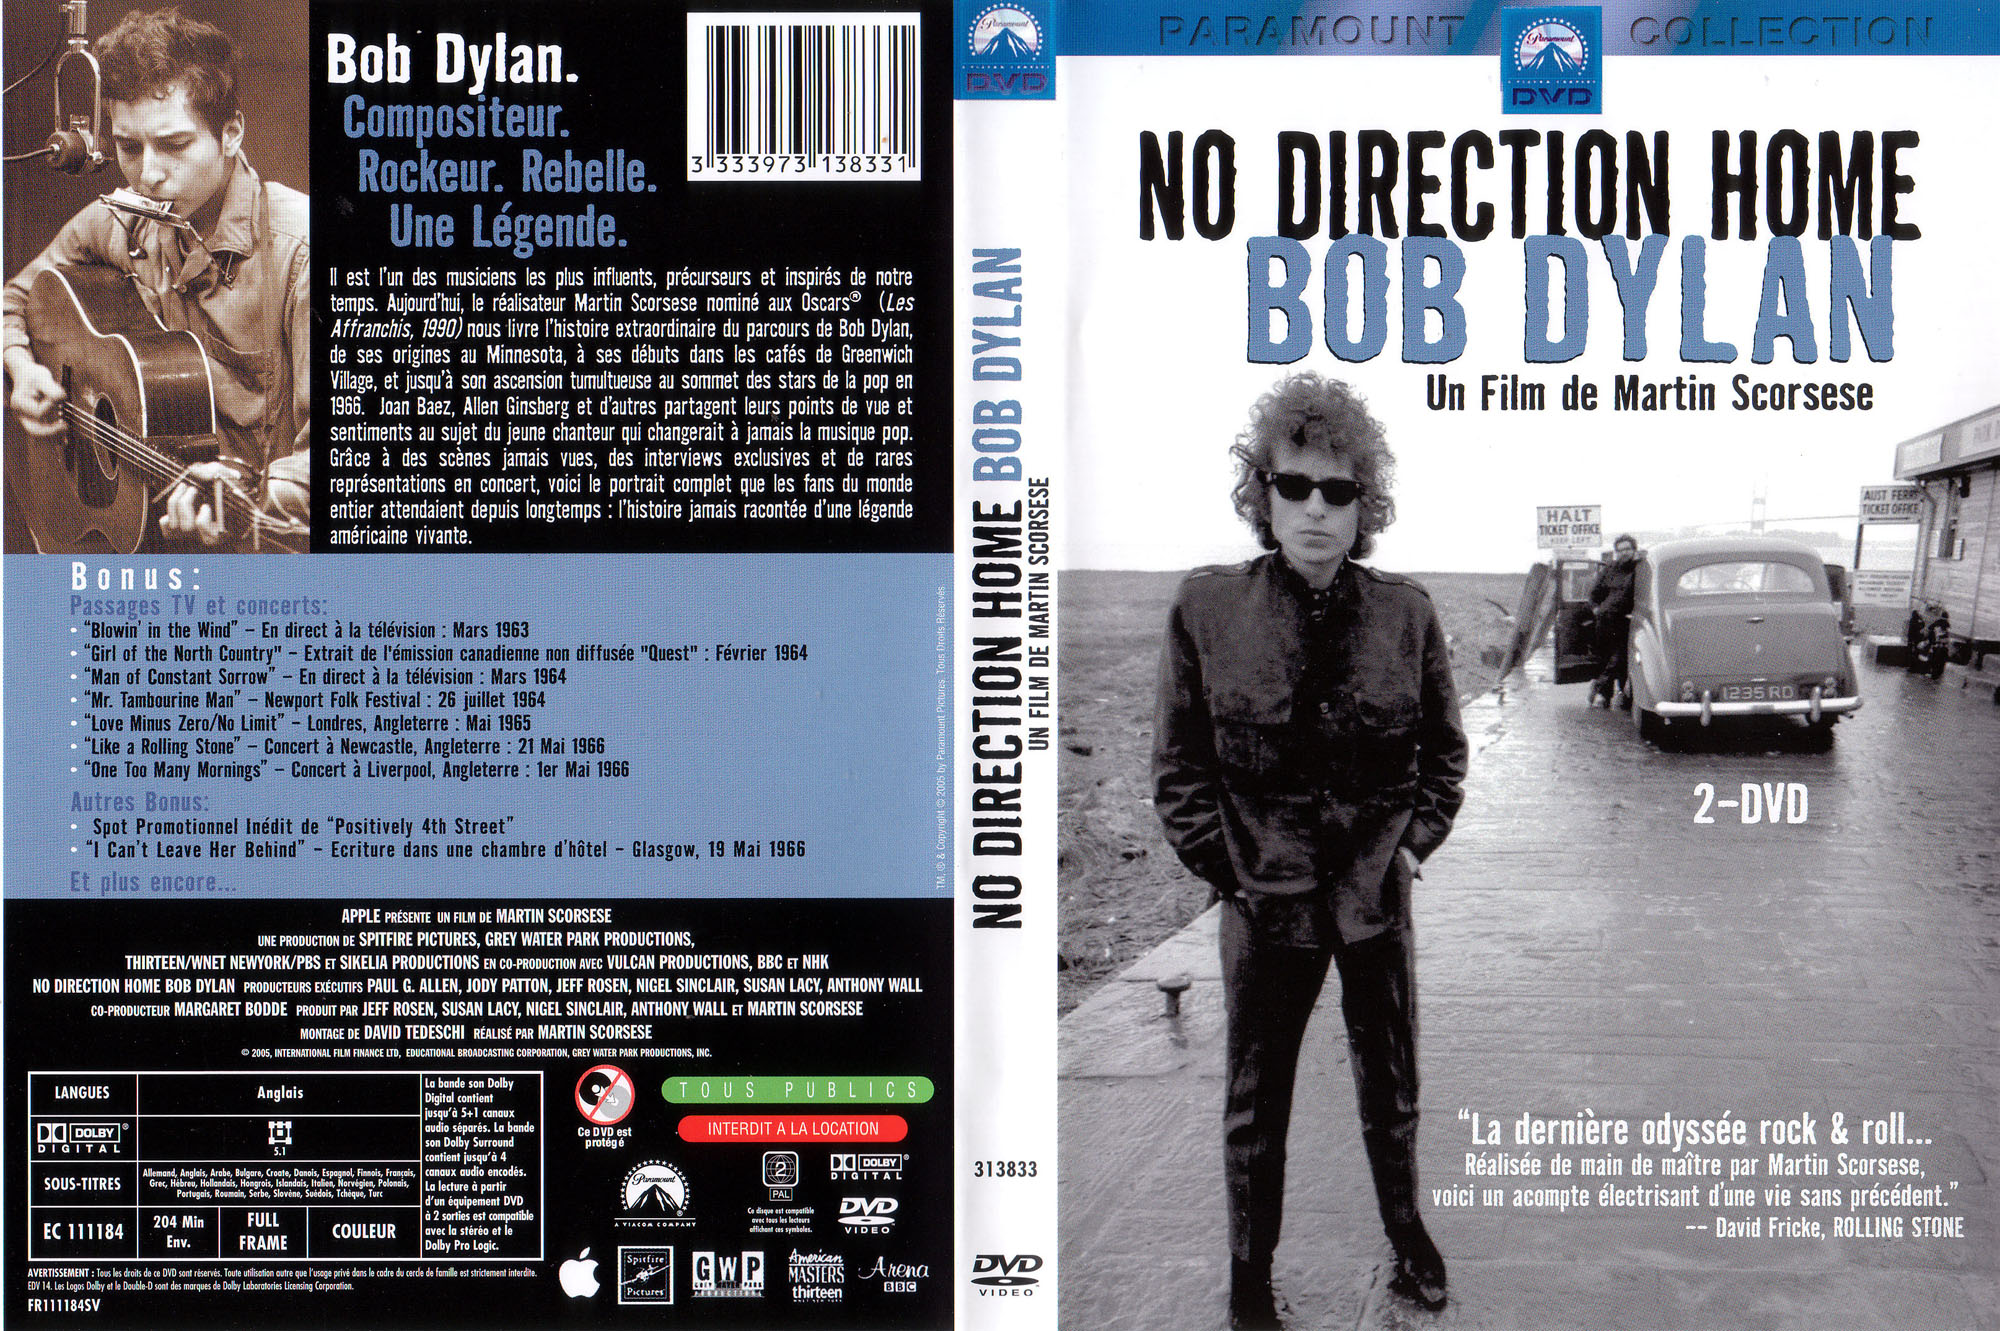 Jaquette Dvd De Bob Dylan No Direction Home Cinéma Passion 